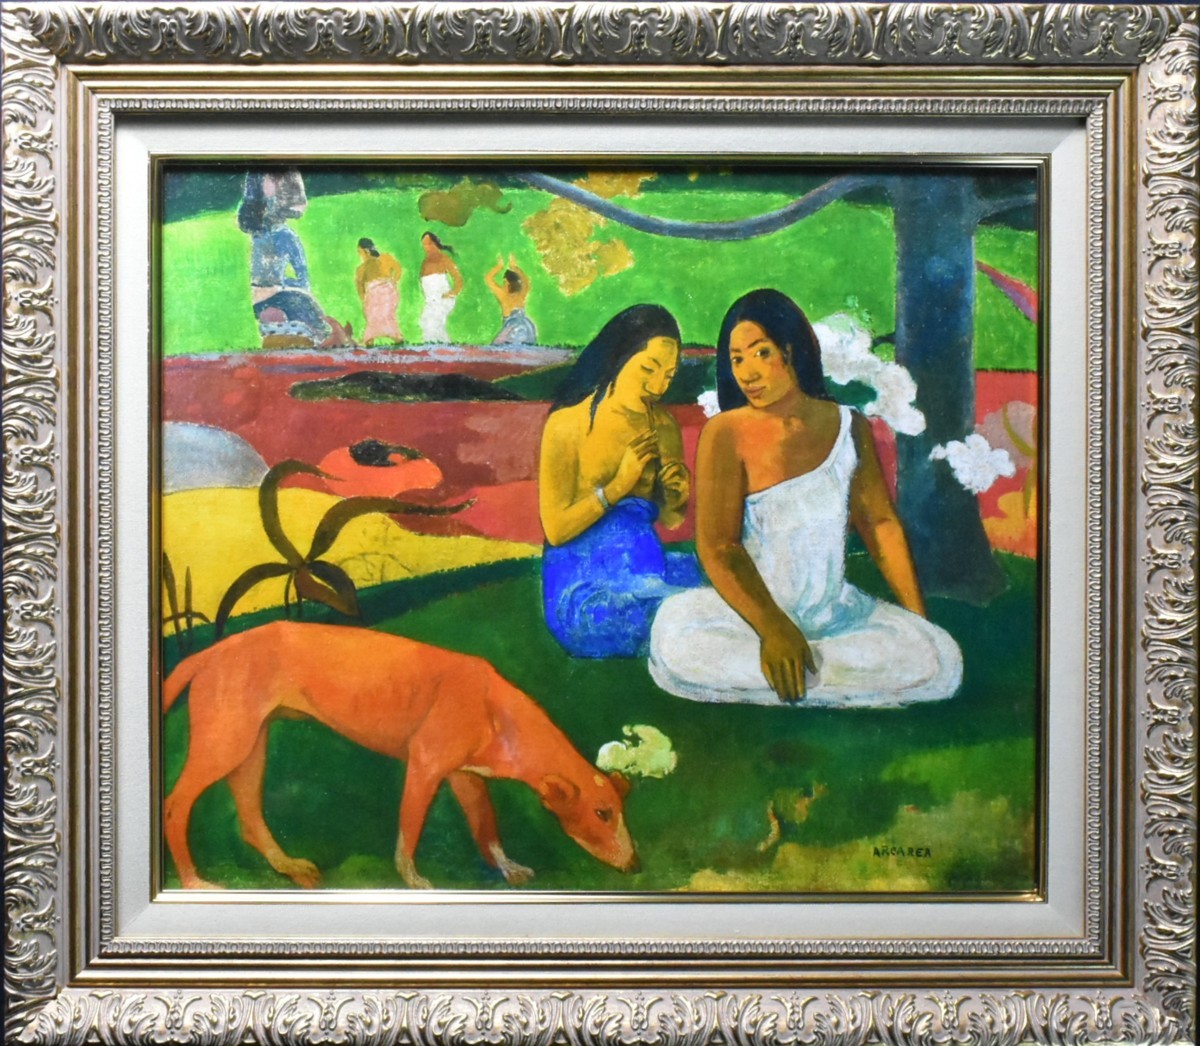 Reproduktion eines französischen postimpressionistischen Malers, Gauguin Arearea 8F 1/100, Seiko Gallery, Kunstwerk, Drucke, Andere